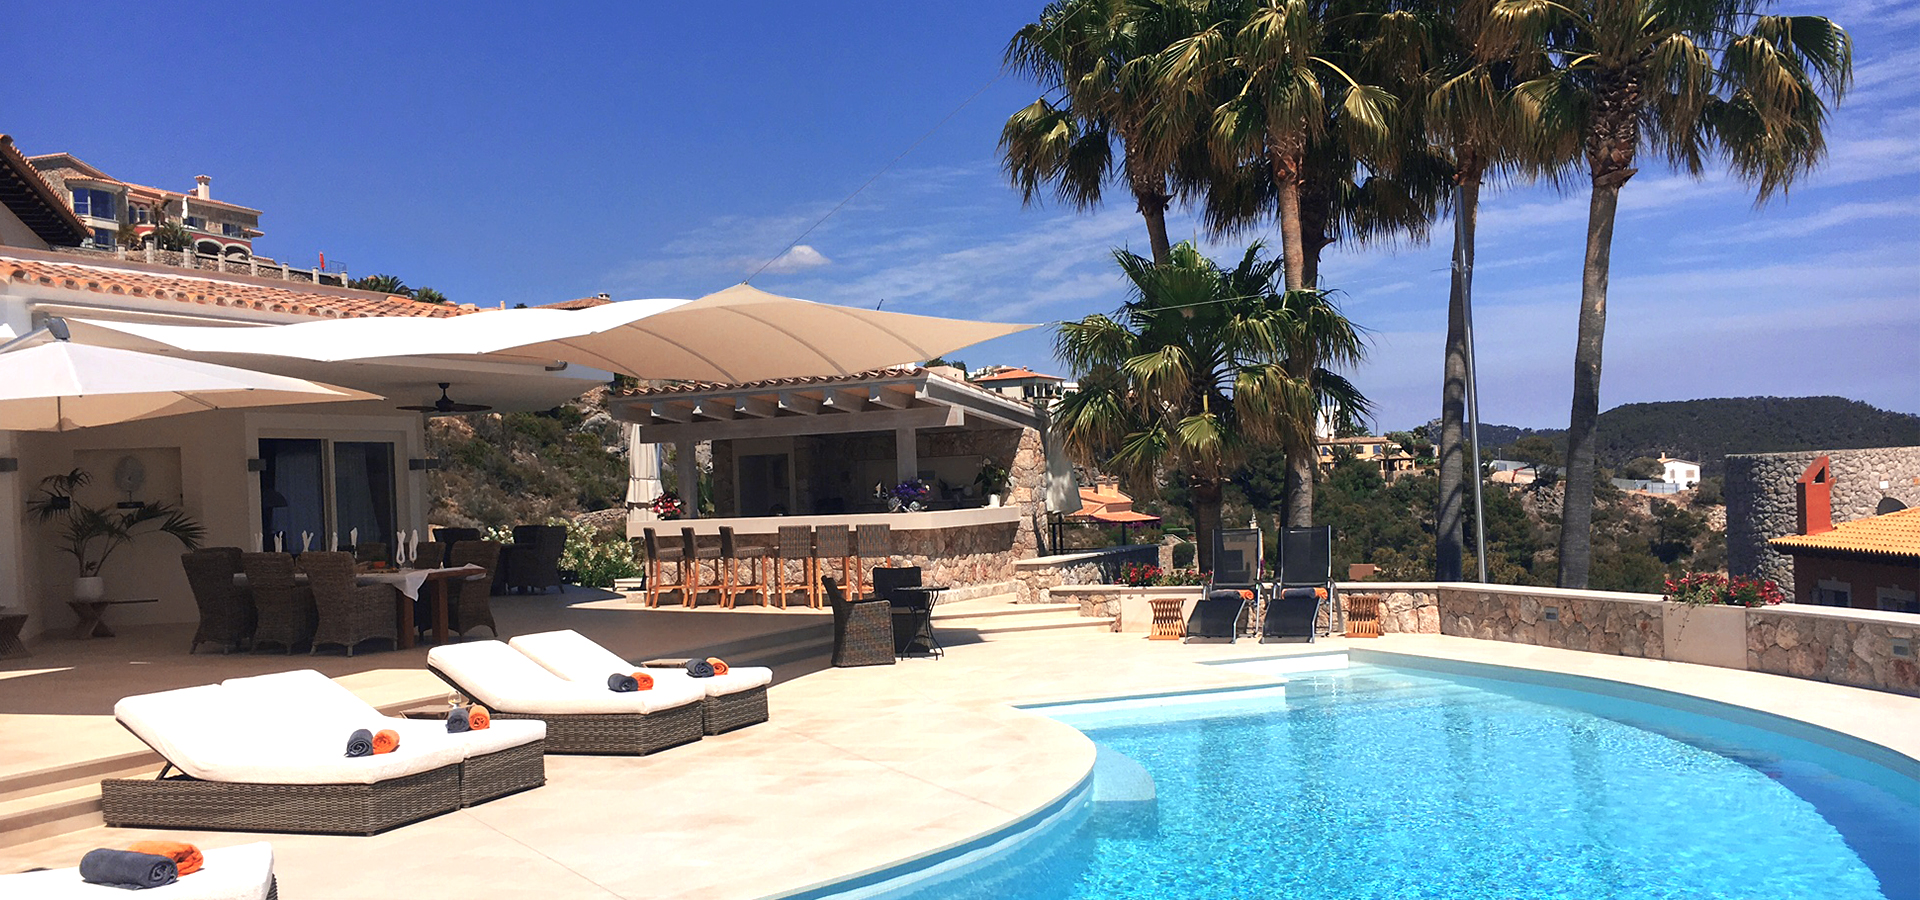 Bild: Außenbereich in Mallorca mit Pool, Palmen, Liegen und einer Bar.